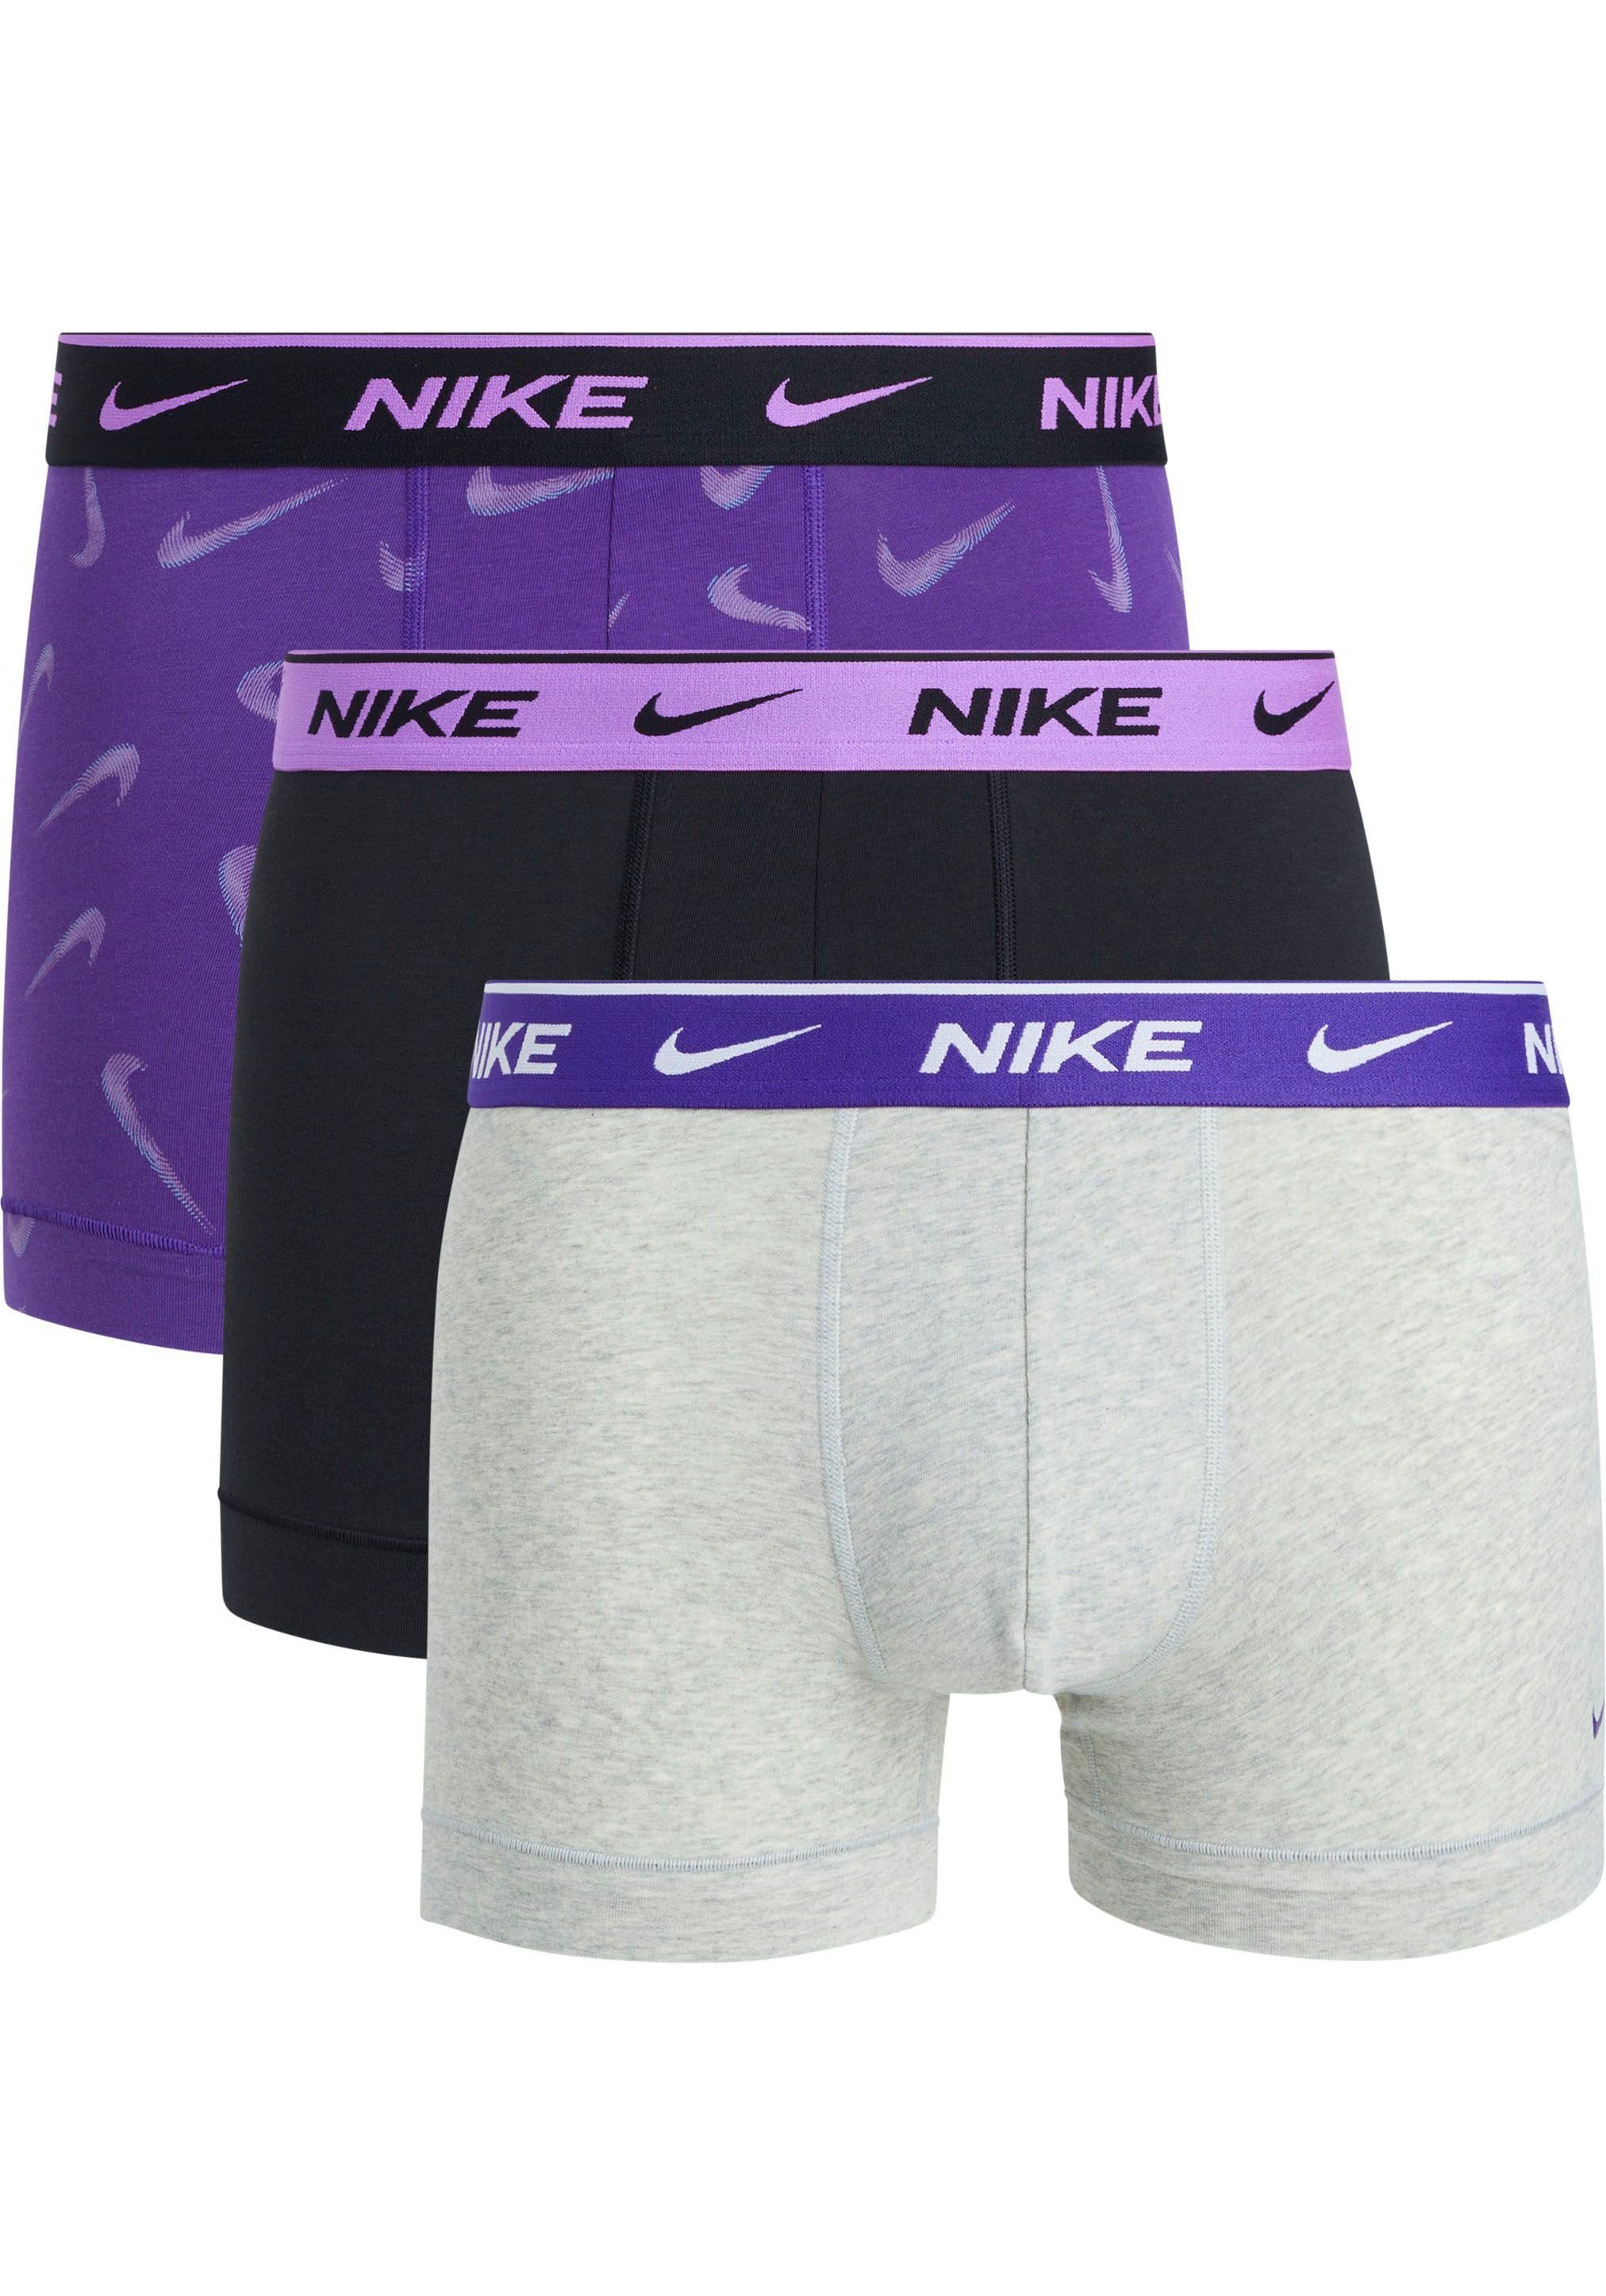 NIKE Logo-Elastikbund 3PK Stück) Trunk (3 mit NIKE TRUNK (Packung, 3er-Pack) Underwear